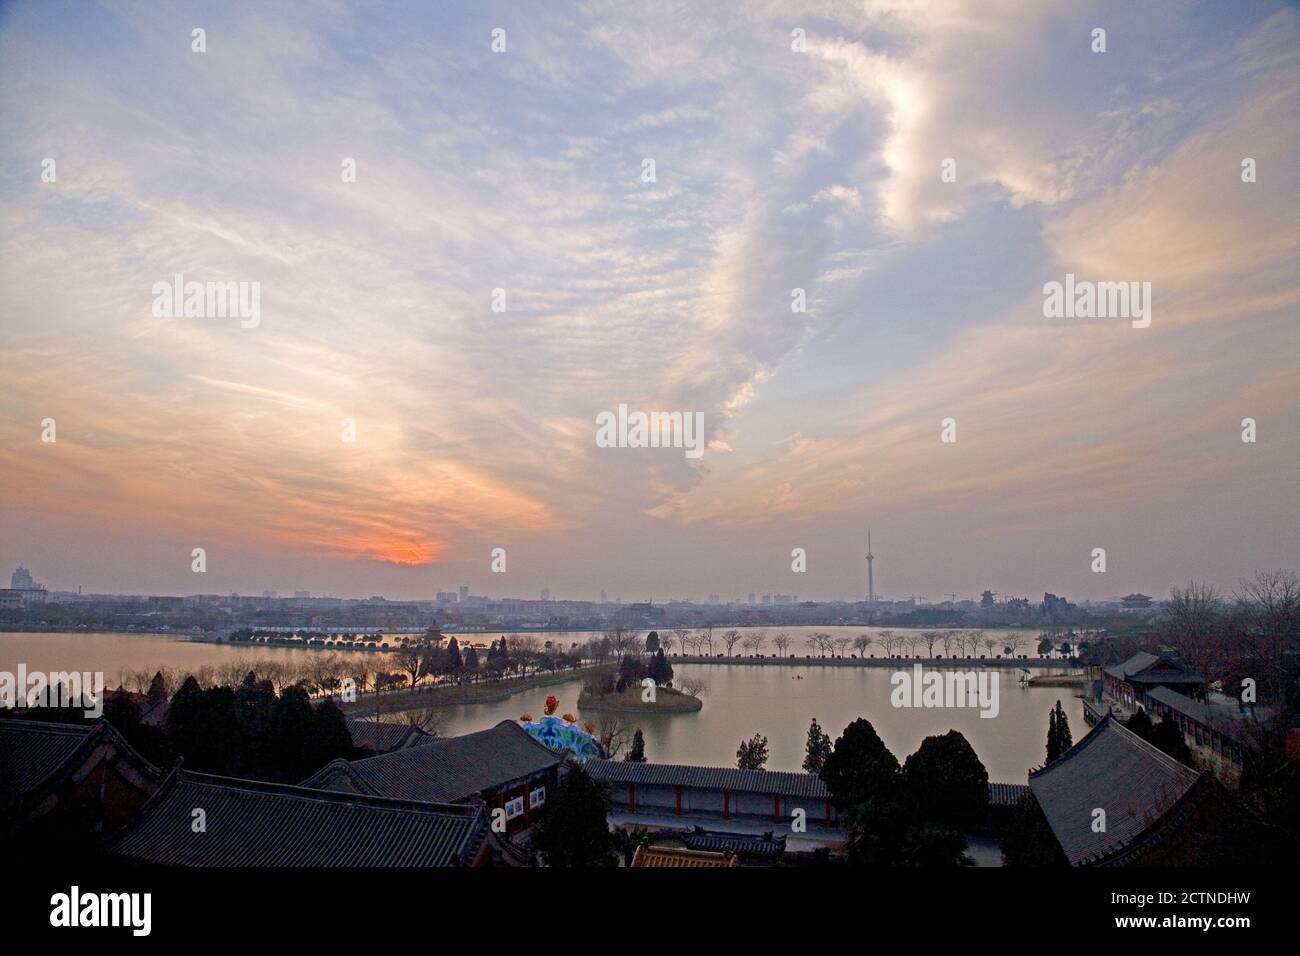 Henan Kaifeng Longting Lake sunset Stock Photo